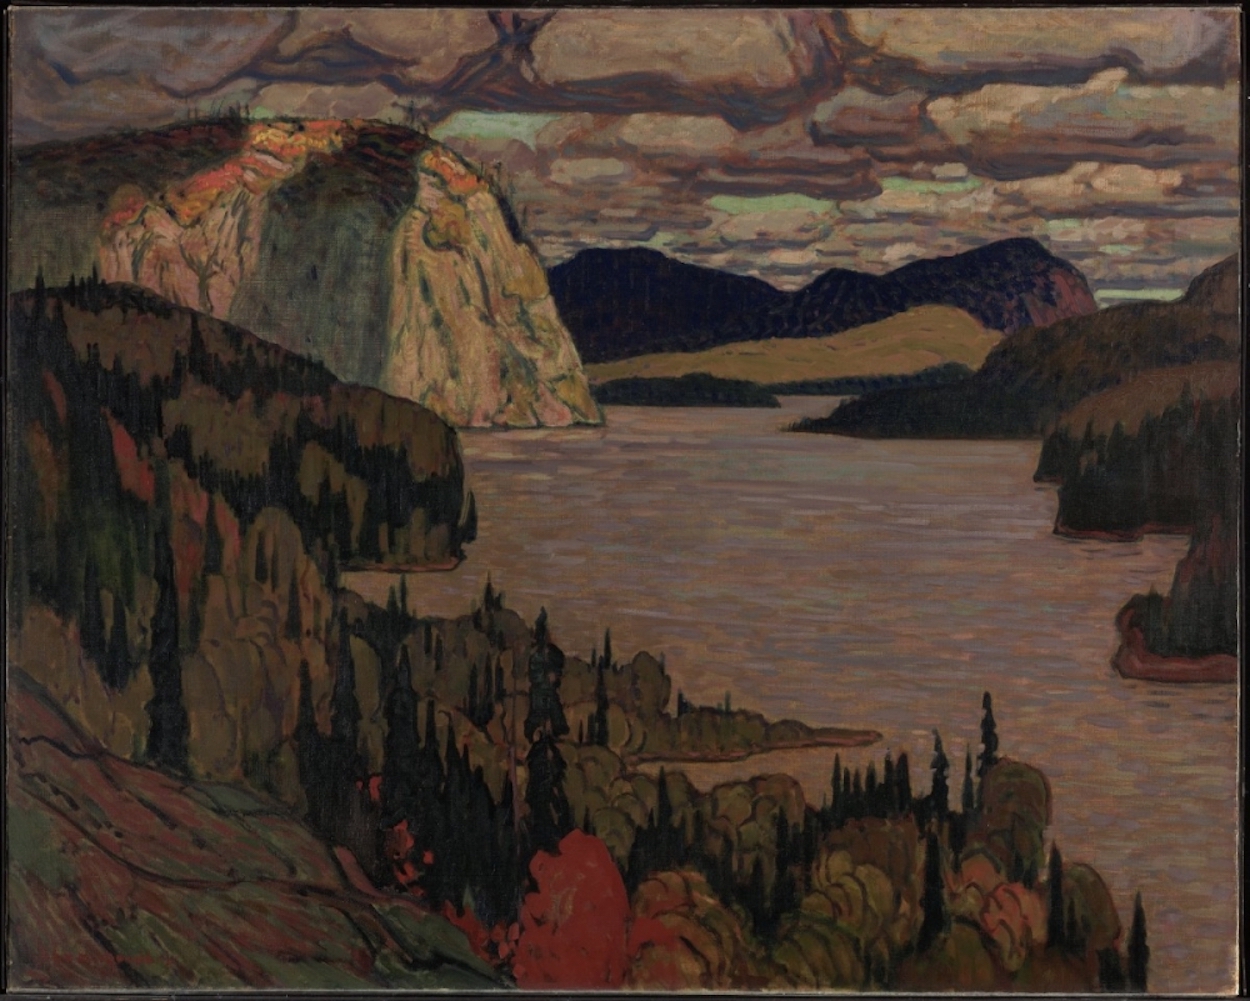 莊嚴之地 by J.E.H. MacDonald - 1921 - 122.5 x 153.5 cm 